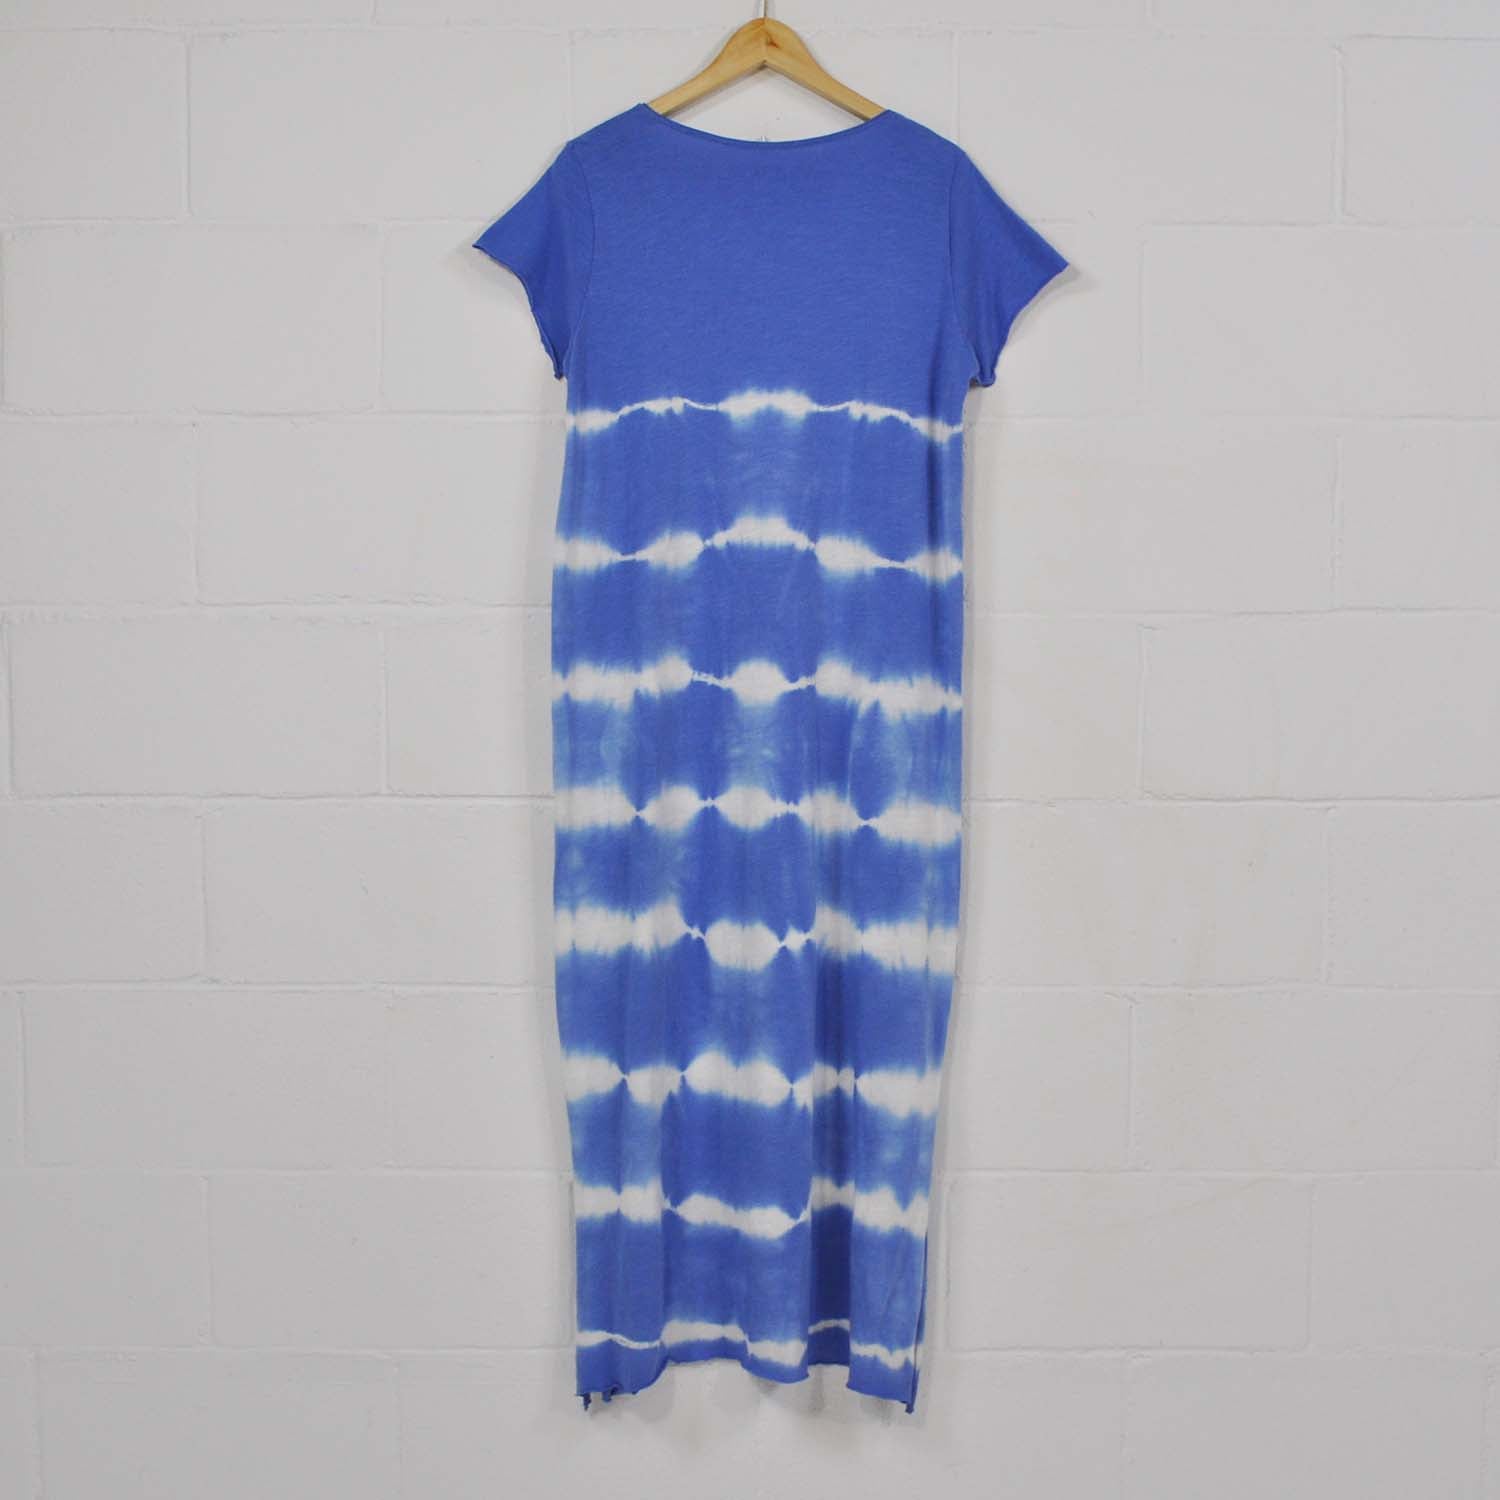 Blue tie dye short sleeve dress